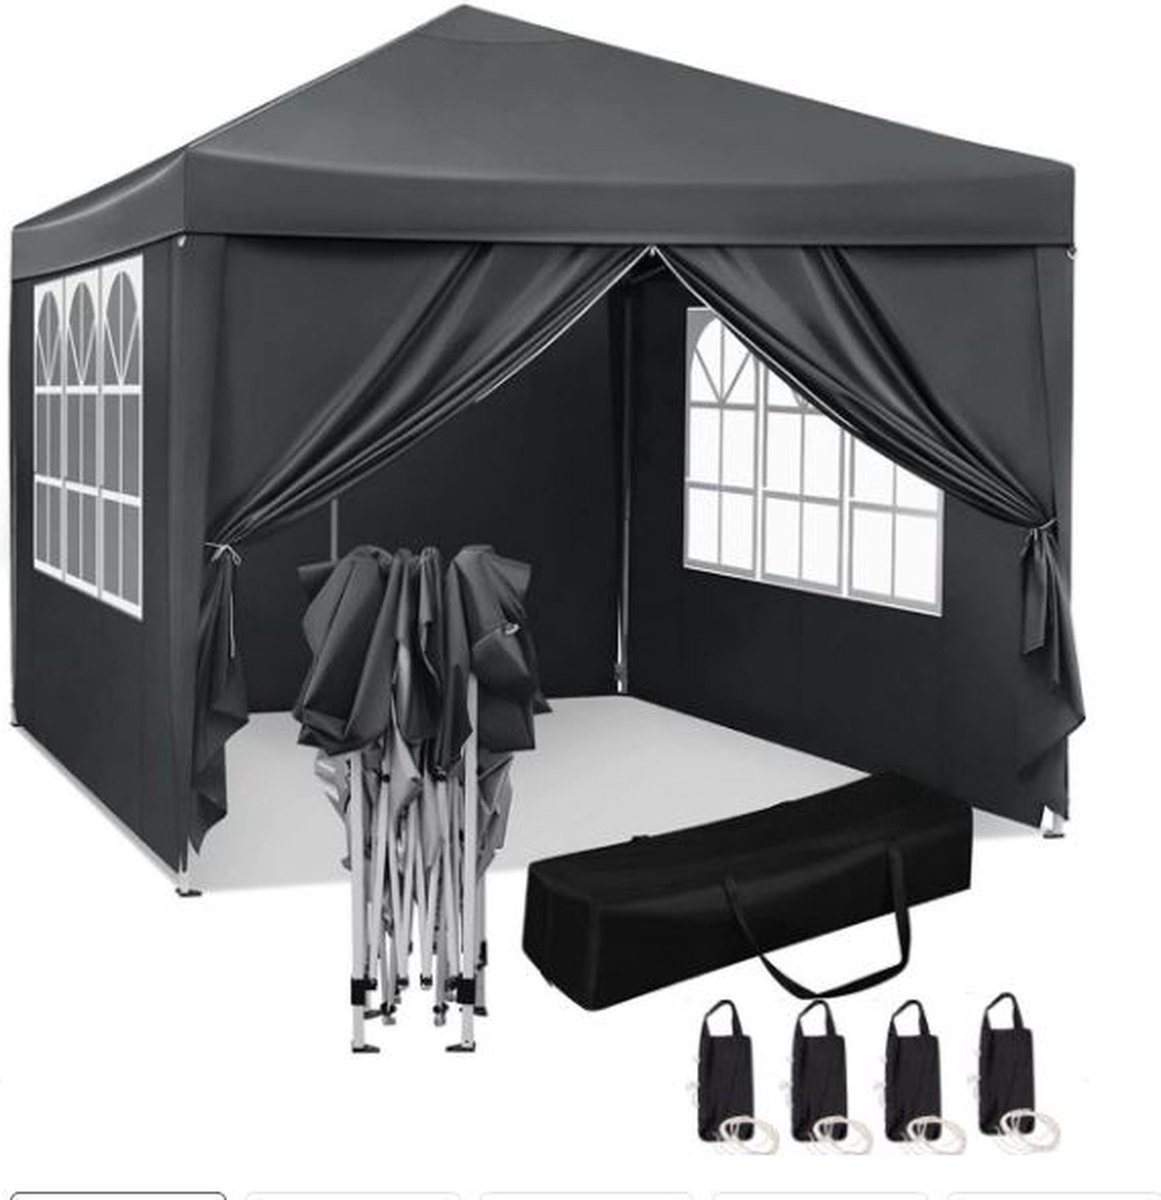 Qualytents - Partytent - Easy up - 3 x 3m - Paviljoen met Zijpanelen - Opvouwbaar - Waterdichte Tent - In Hoogte Verstelbaar - Zwart - Extra stevig